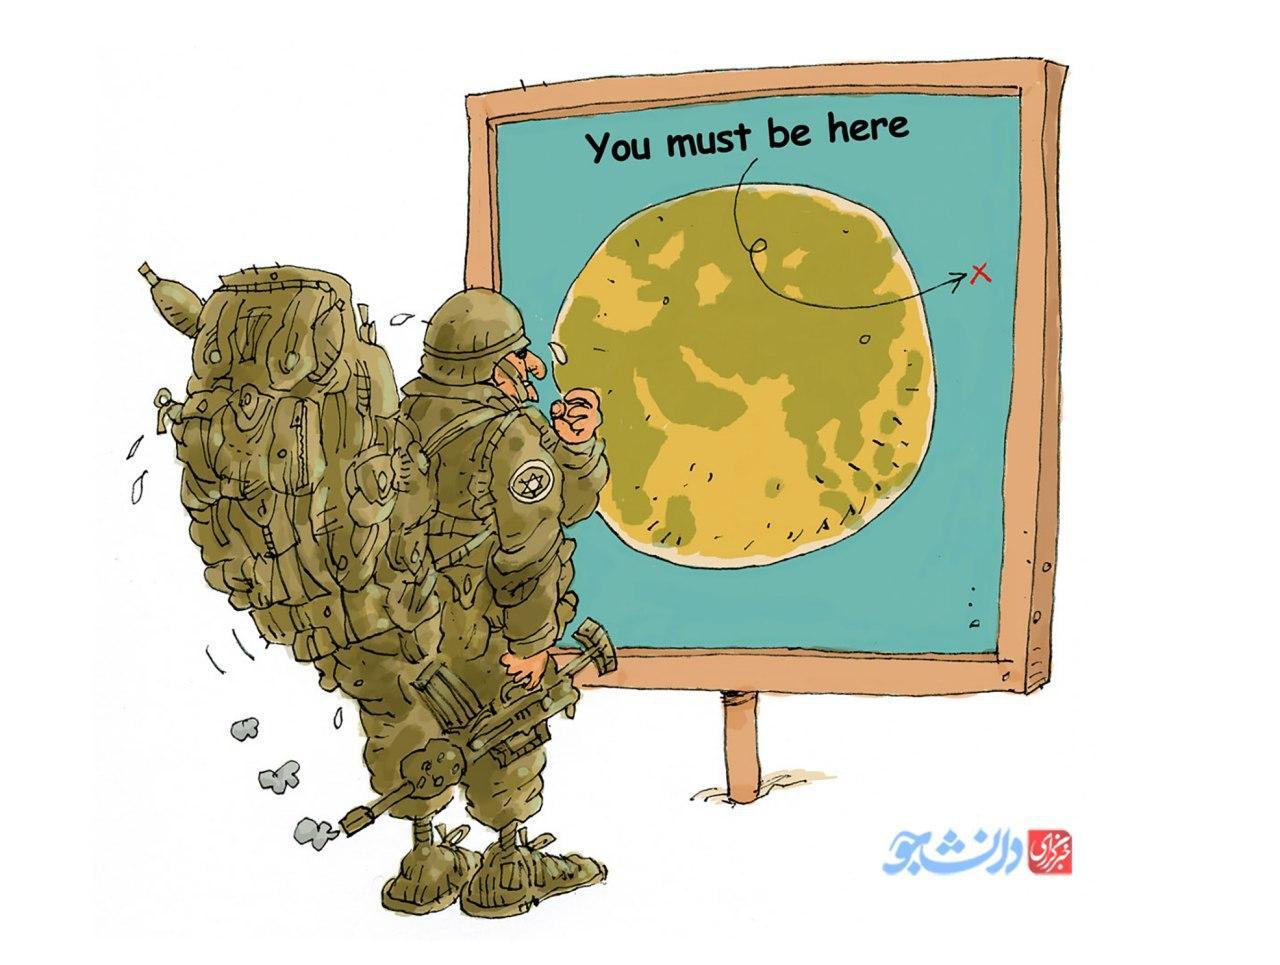 کاریکاتور توصیه به سربازان آمریکایی